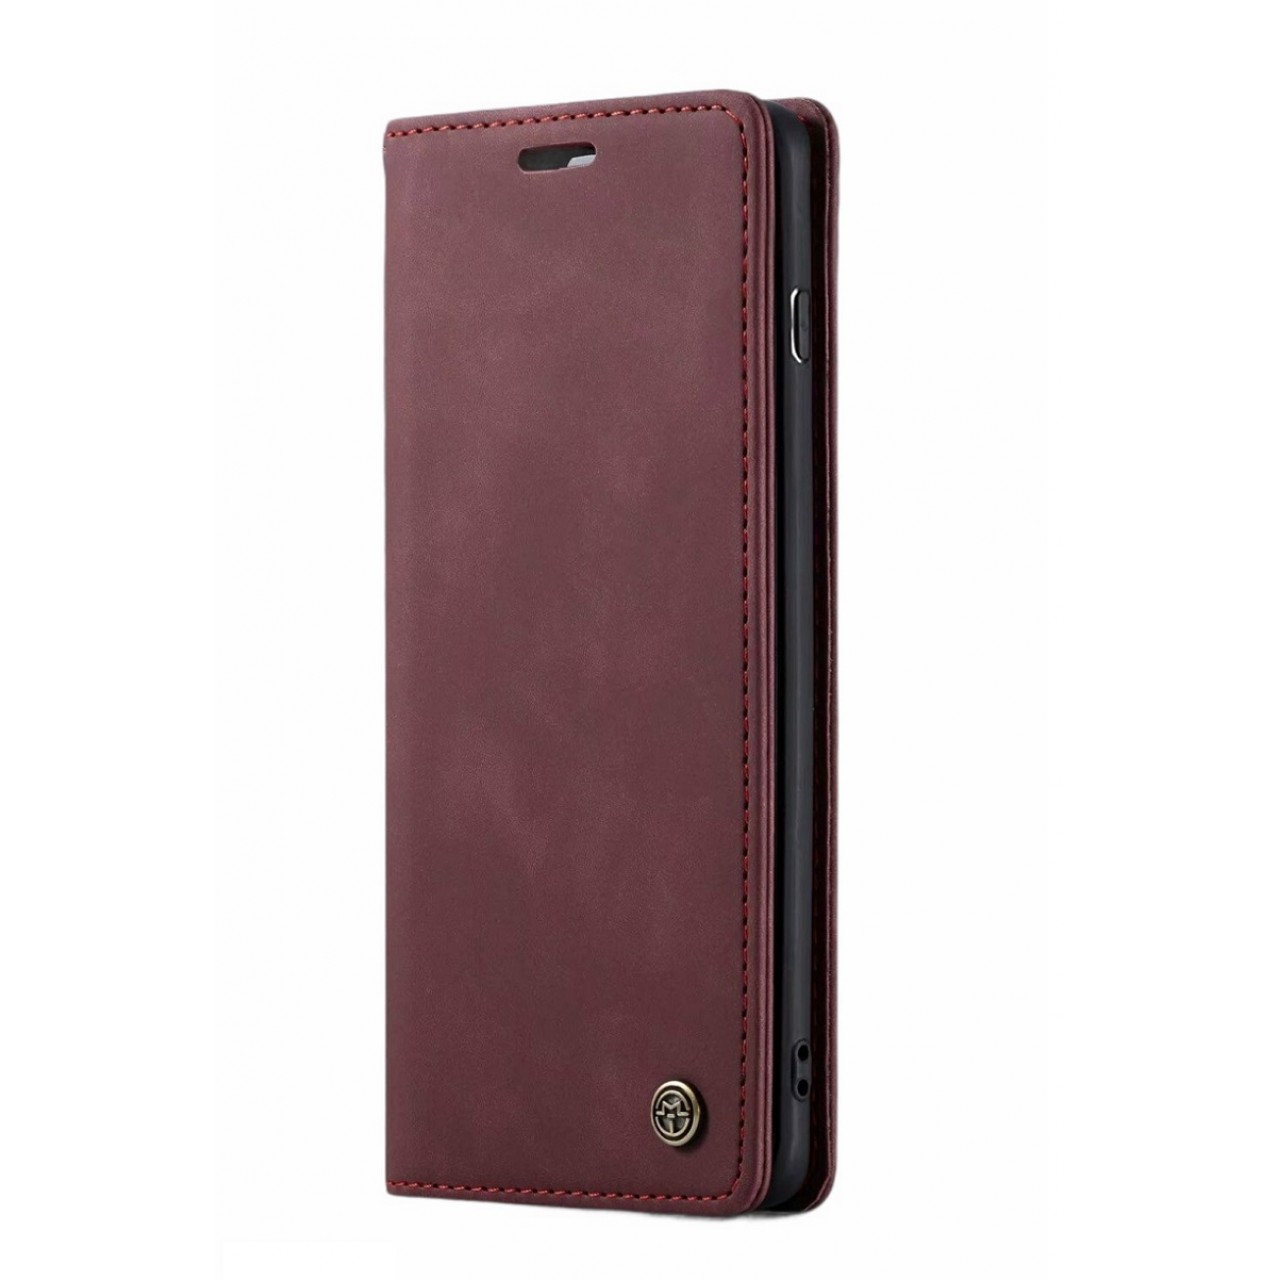 Θήκη Προστασίας Δερμάτινη Τύπου Wallet iPhone XS Max - Luxury Leather Flip Case Caseme - Plum